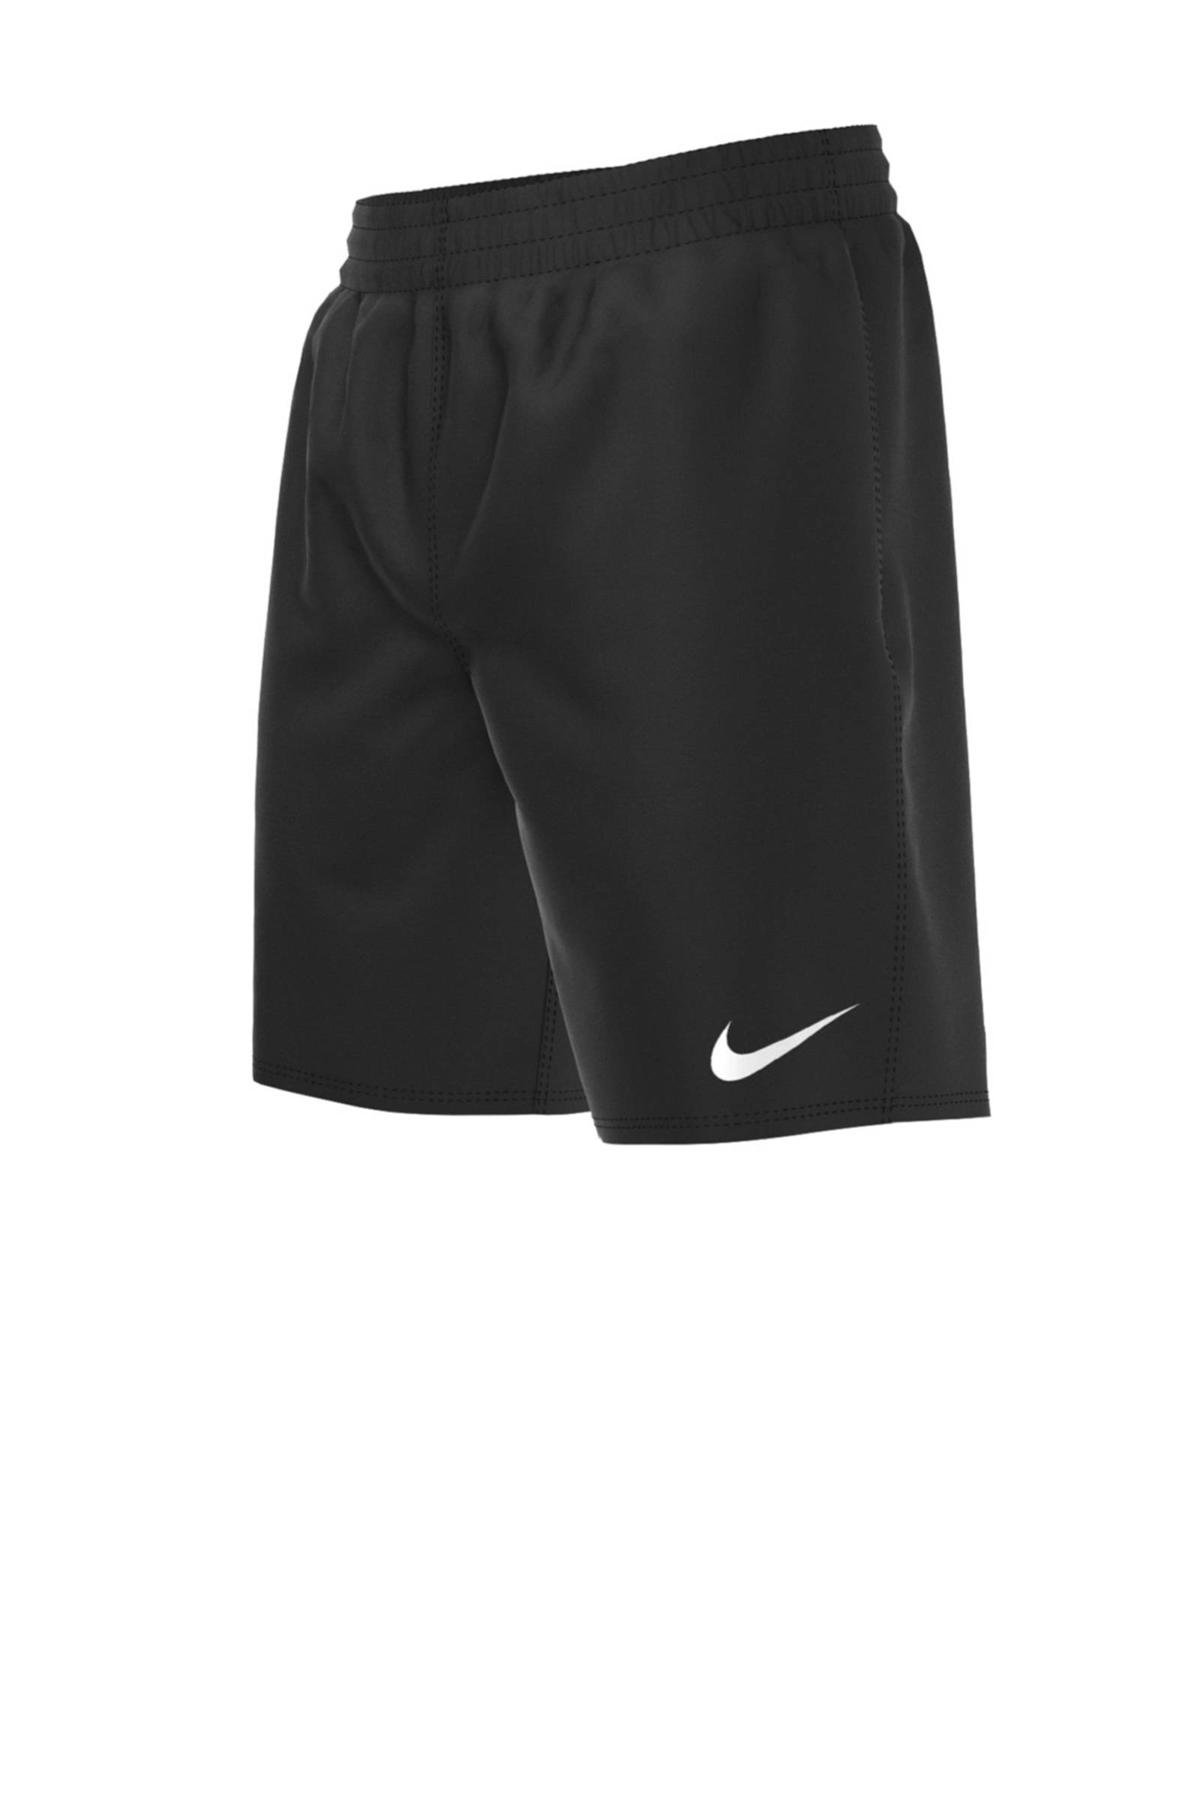 wasserette Aanbod hoesten Nike zwemshort Essential 6" zwart | wehkamp